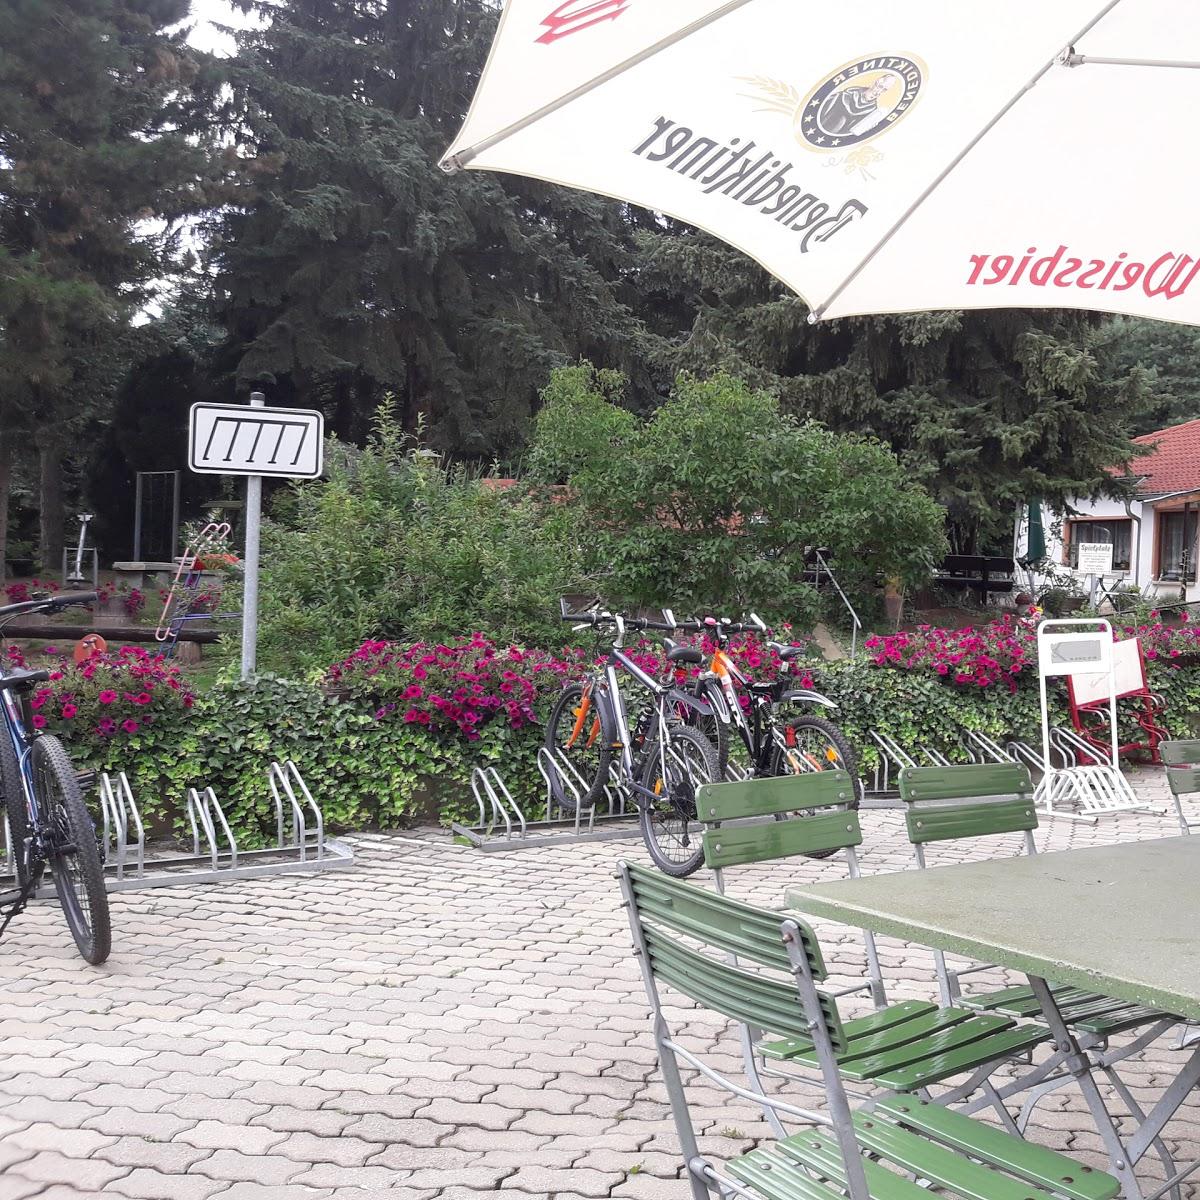 Restaurant "Gasthaus und Pension Collis am Gessenbach" in Gera